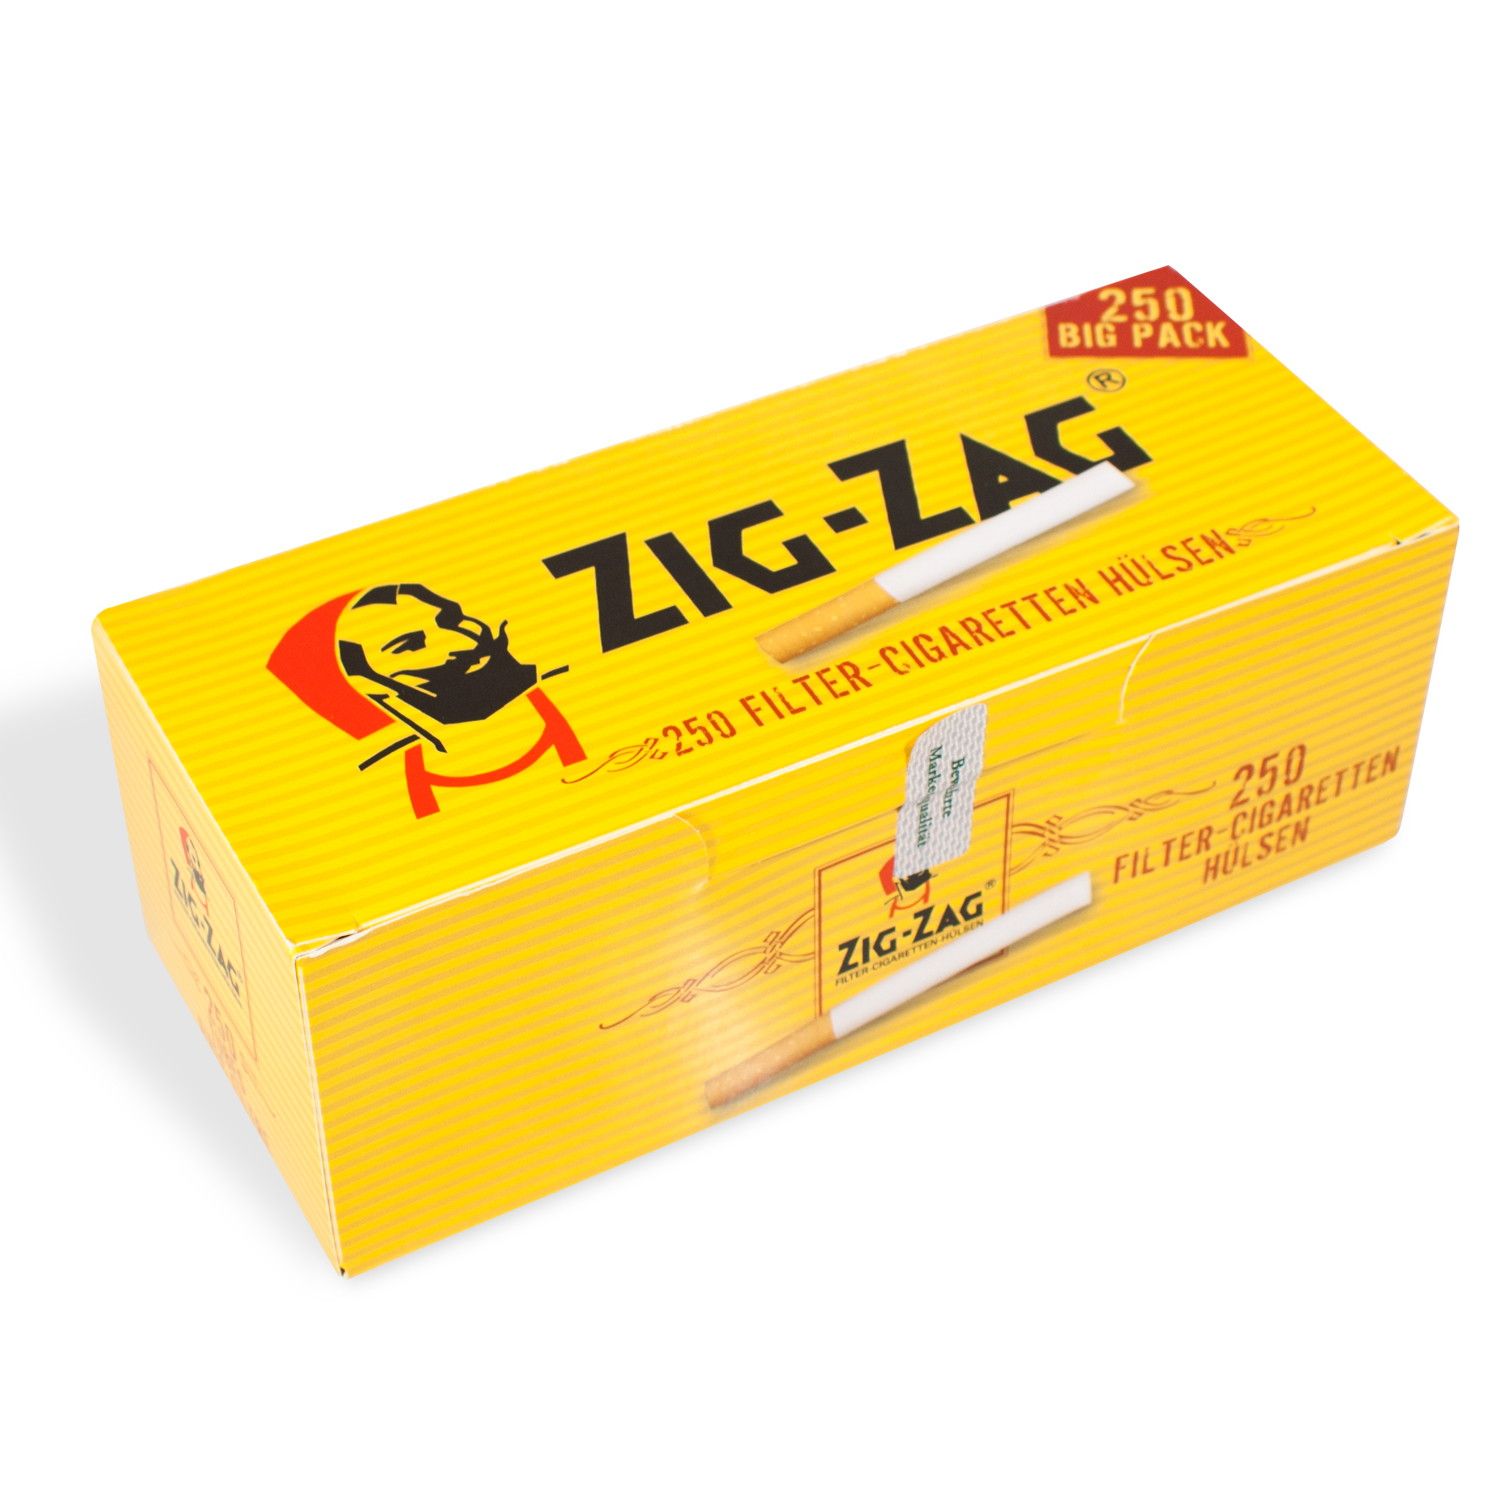 ZIG ZAG Filterhülsen - 10.000 Stück in 40 praktischen Packungen à 250 Stück 